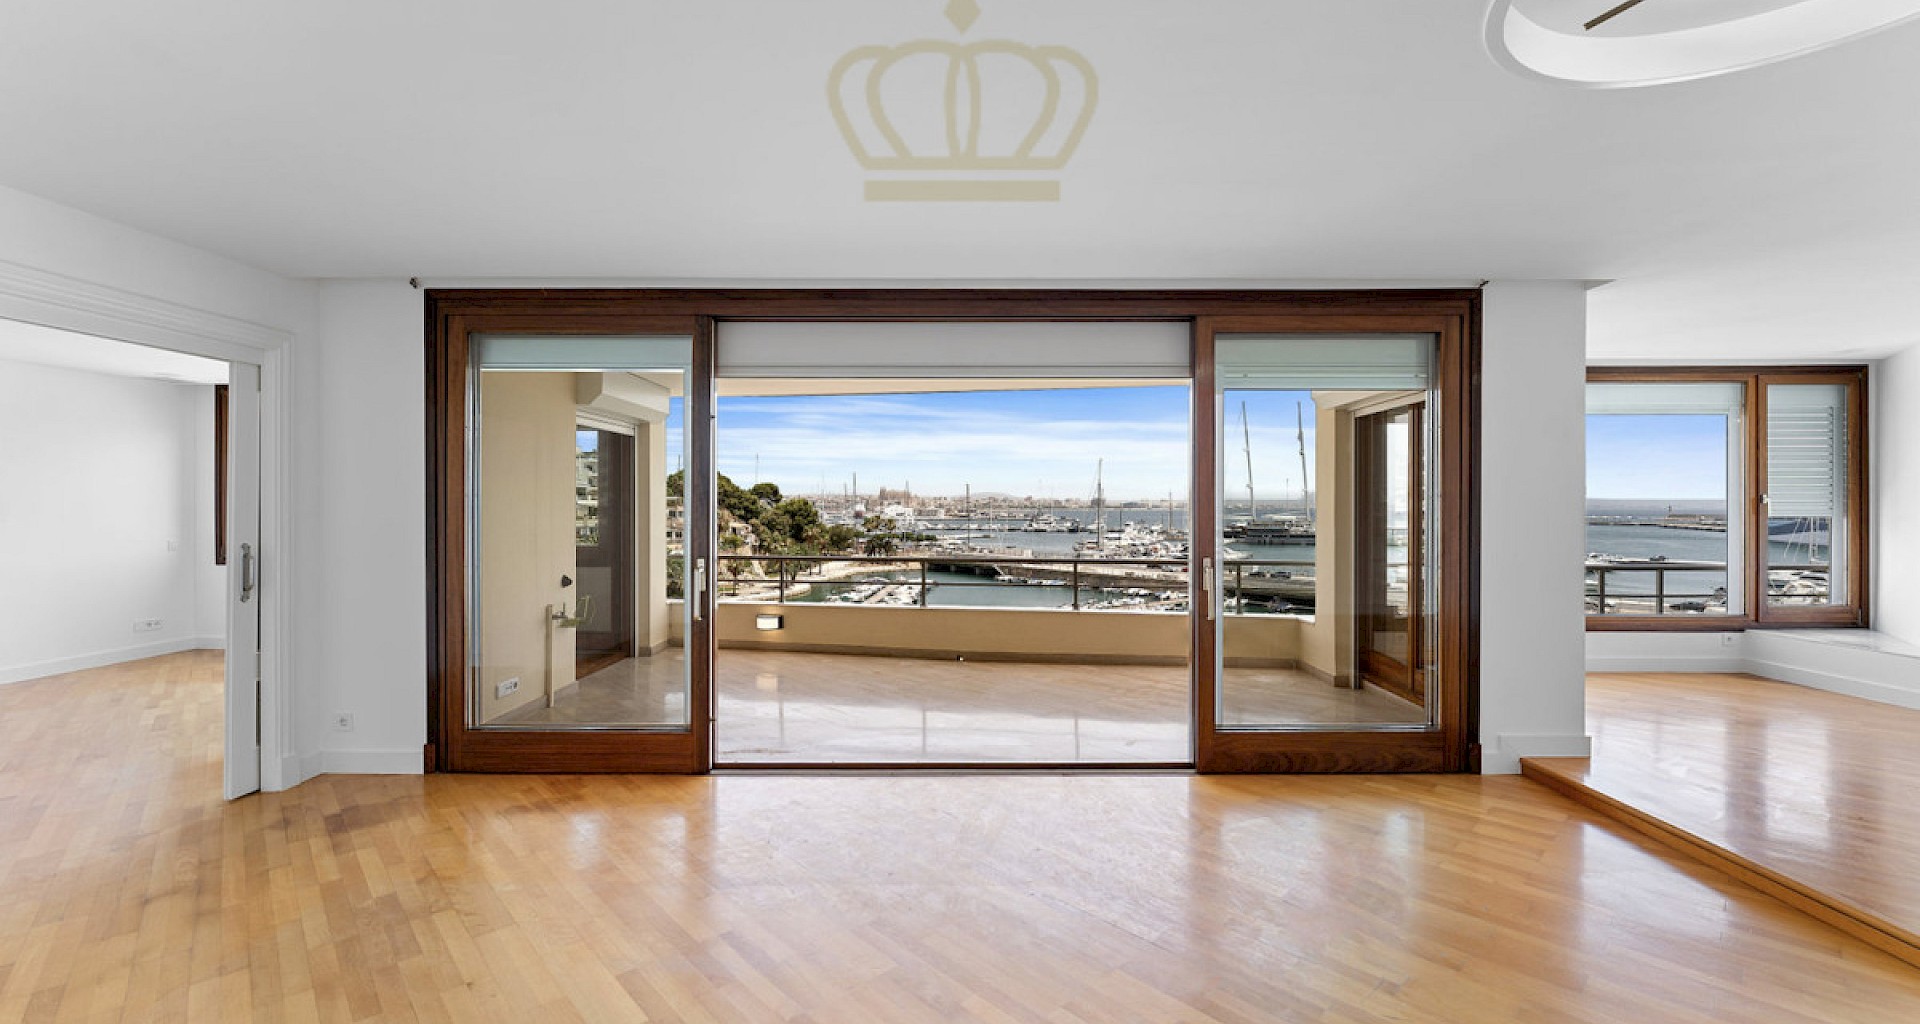 KROHN & LUEDEMANN Grußzügiges Apartment mit tollem Blick über den Hafen von Palma 